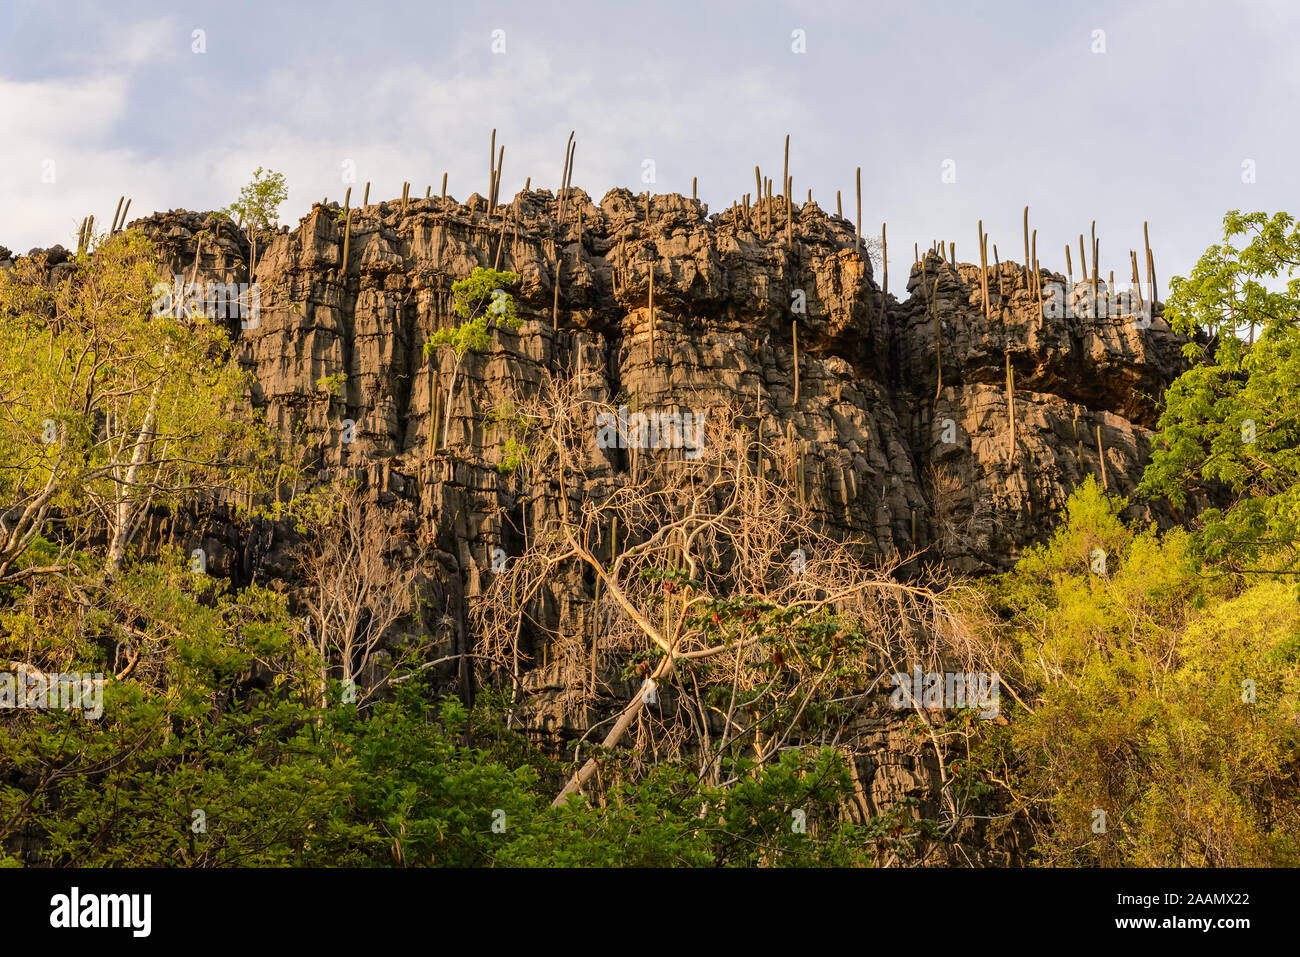 Falaise de calcaire avec de grands cactus dans les zones arides Cerrado. Bahia, Brésil, Amérique du Sud. Banque D'Images